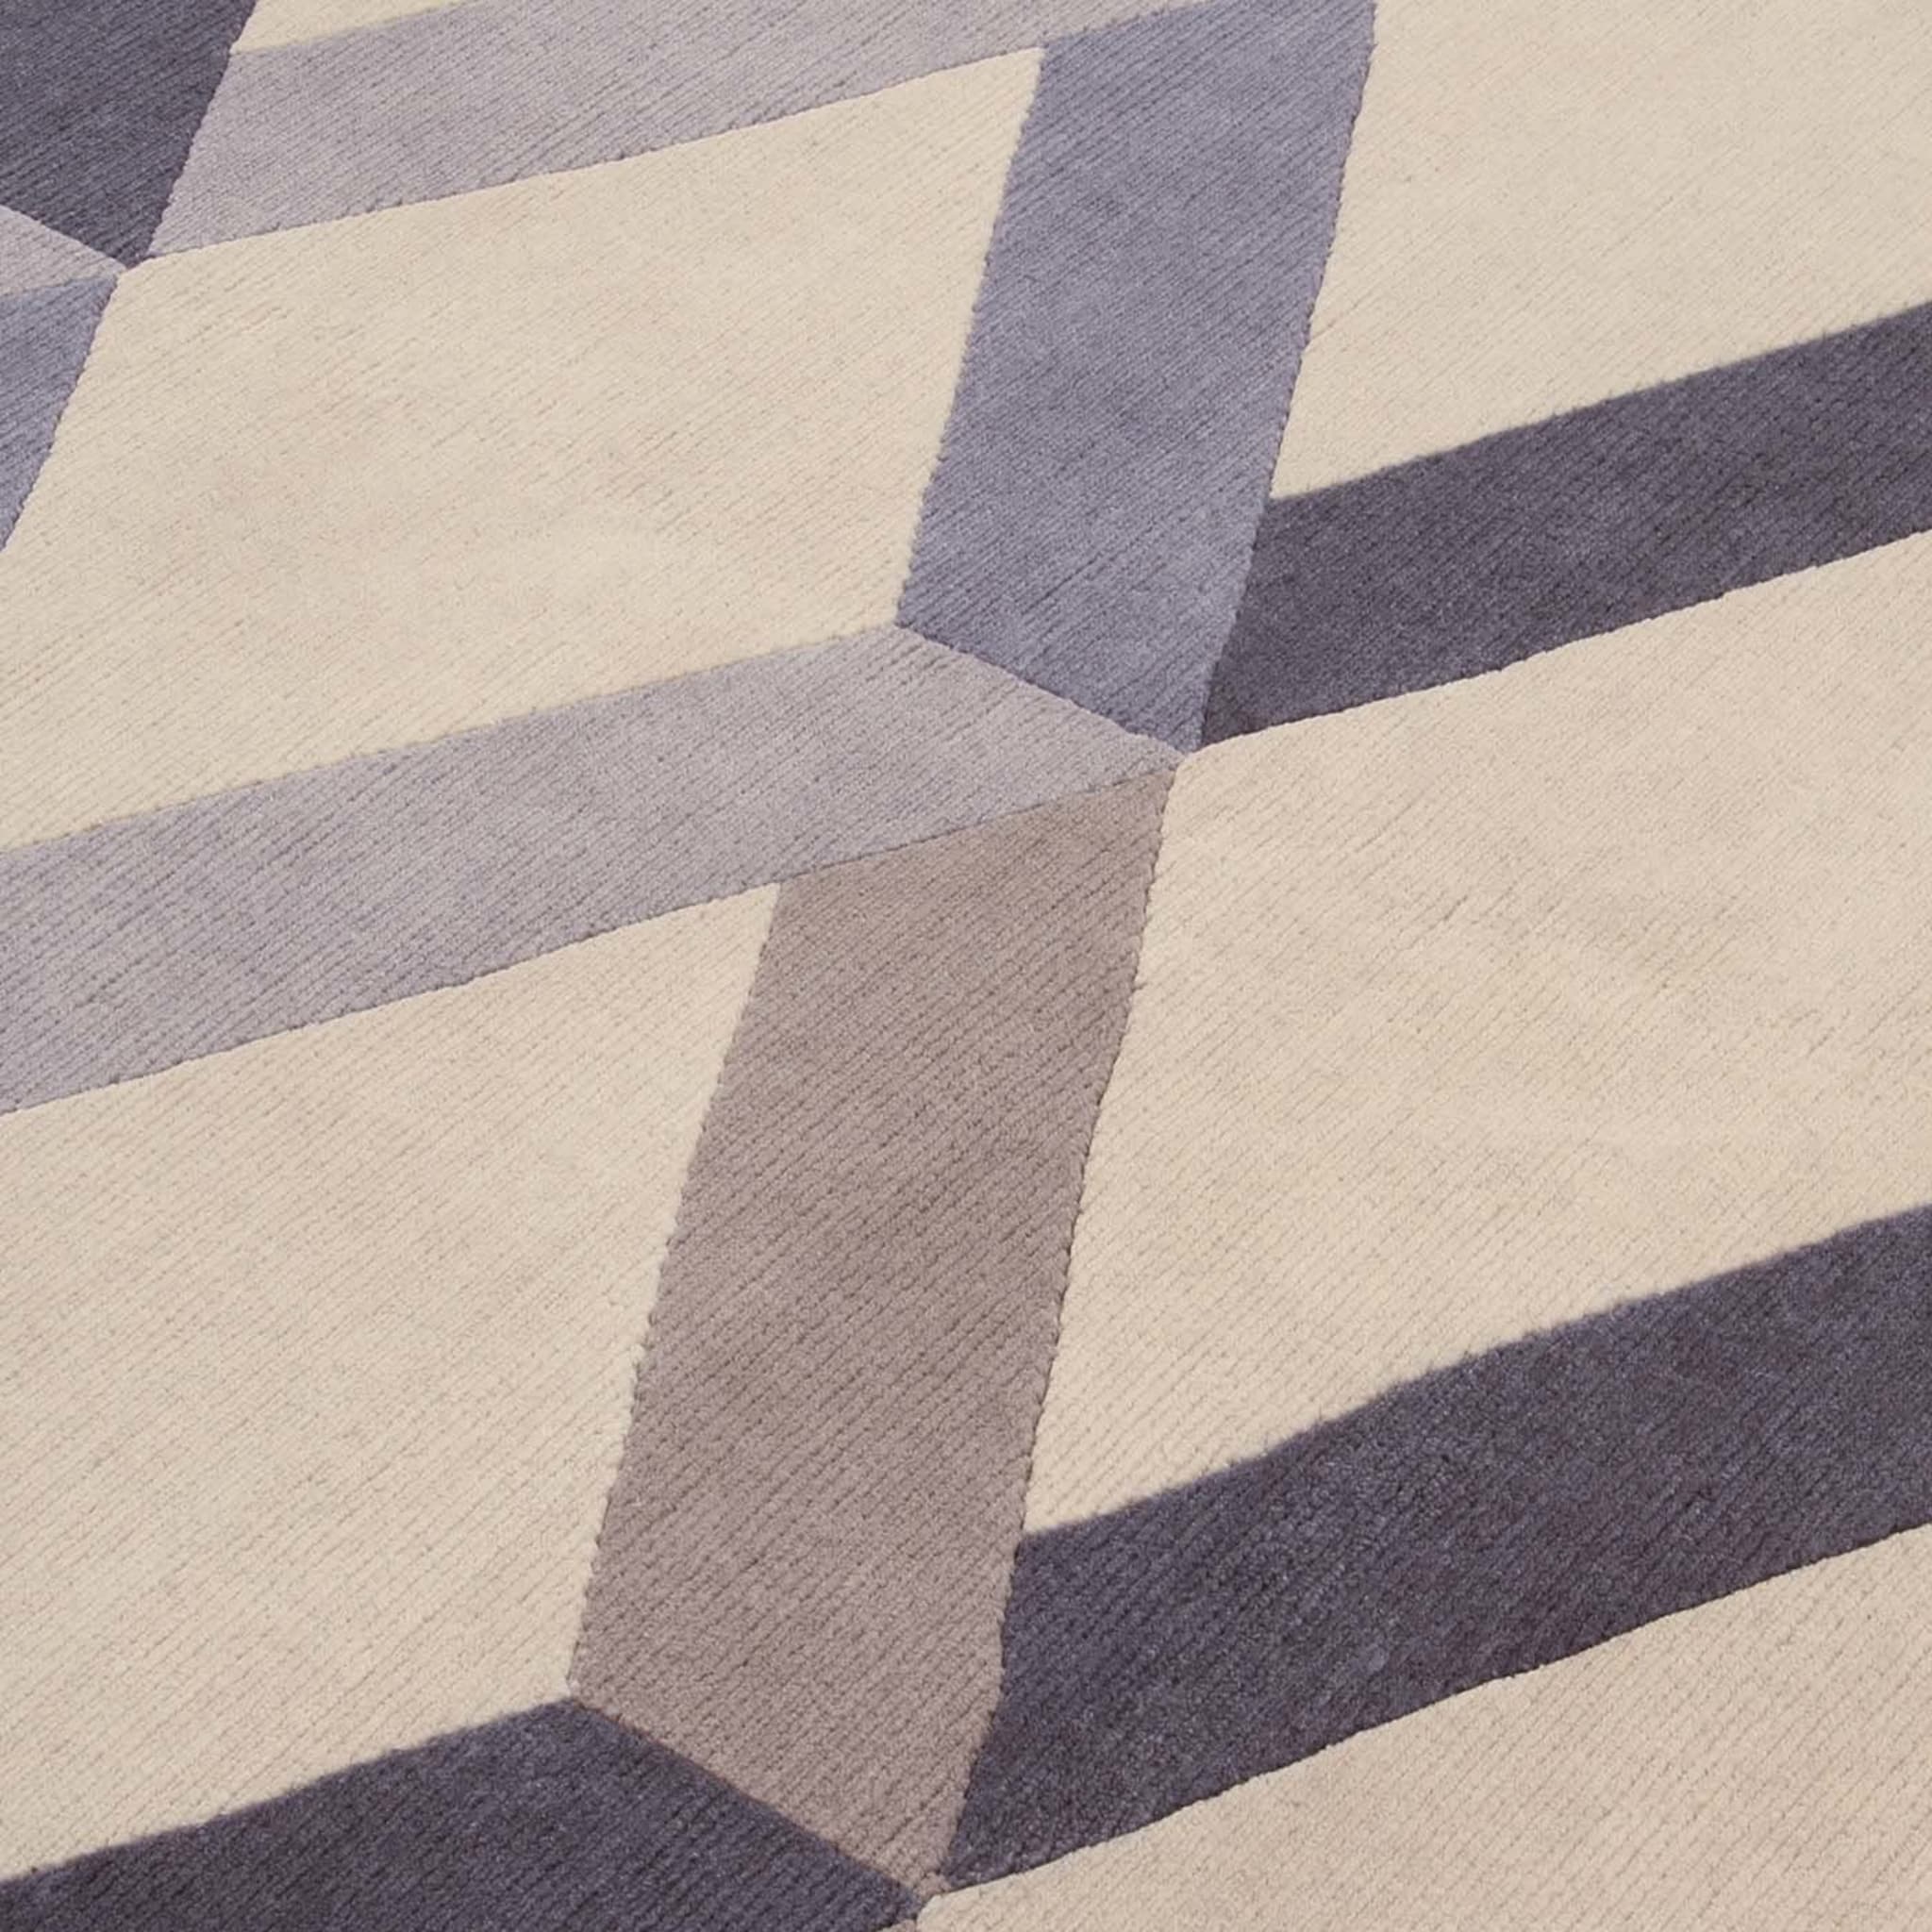 Incroci Blue Carpet by Gio Ponti - Alternative view 1